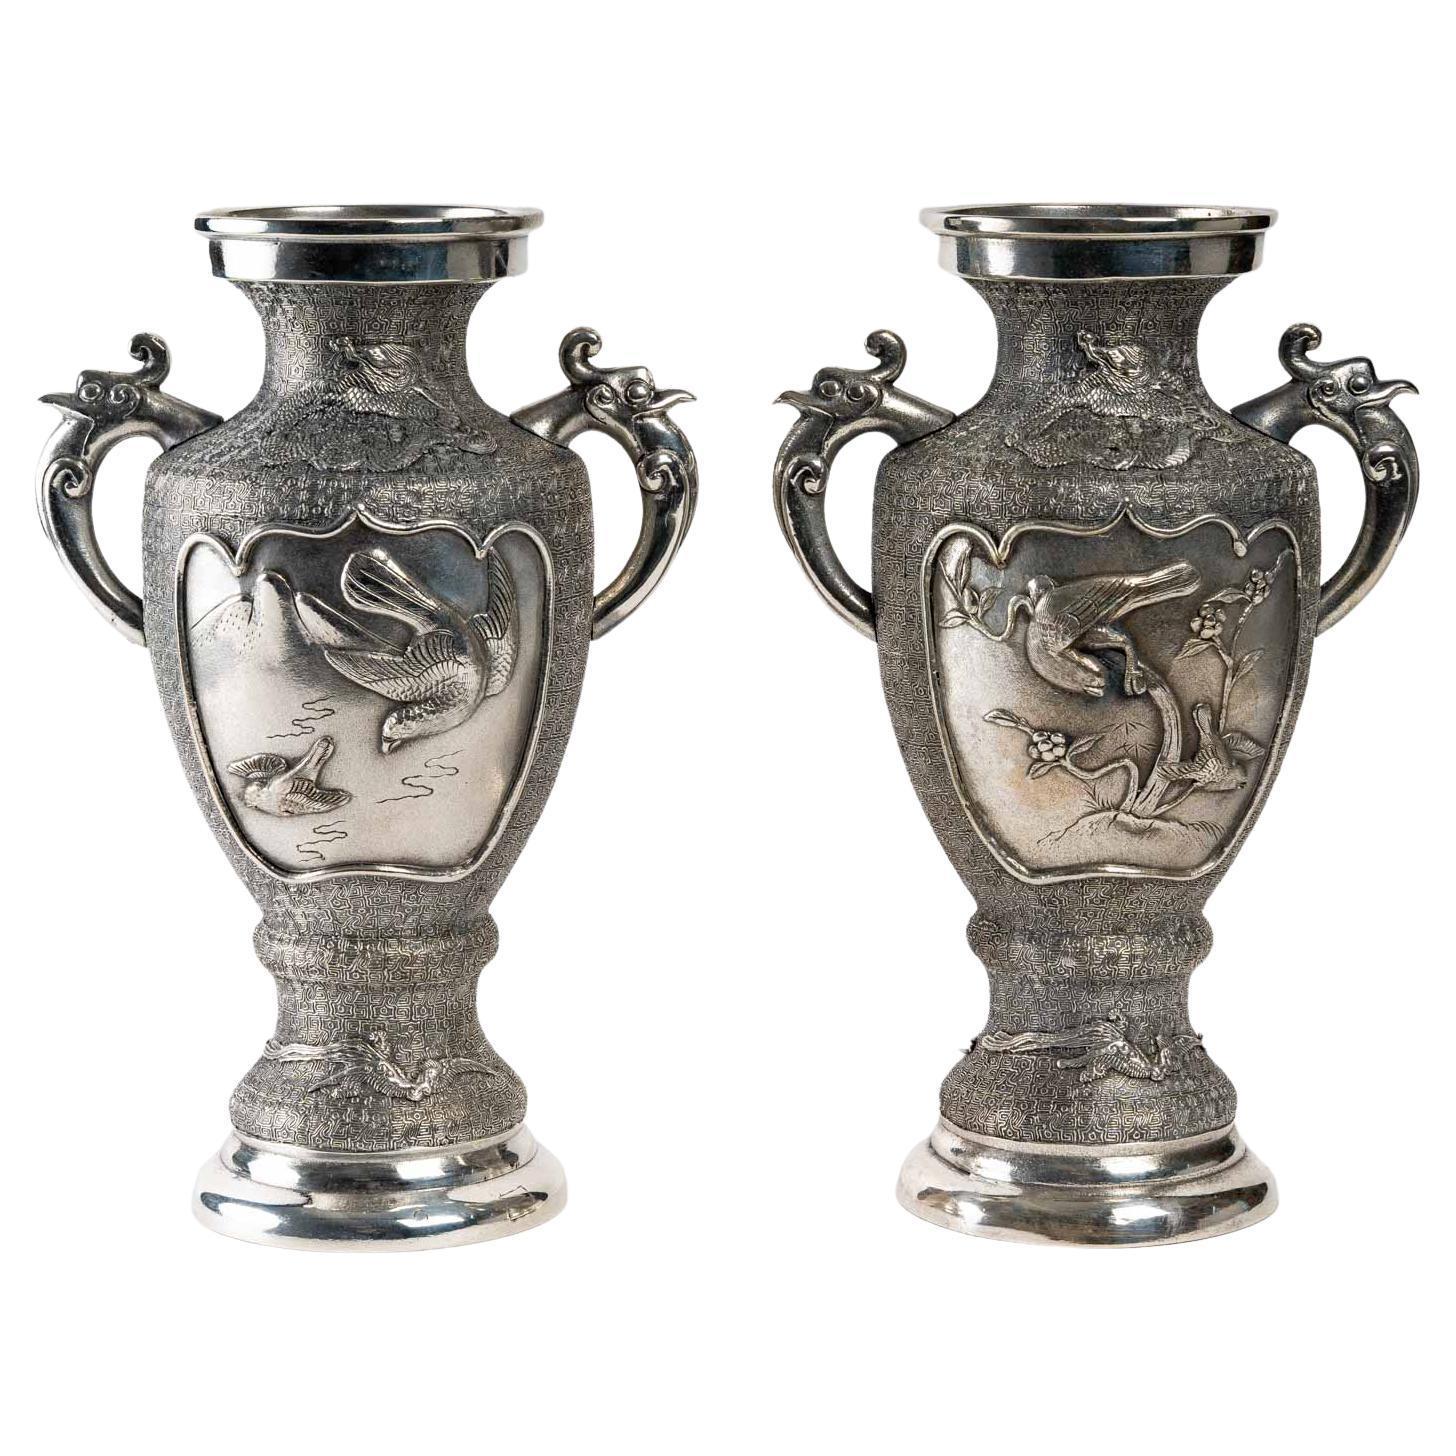 Paire de vases en métal argenté, Asie, début du 20e siècle. Décorée de dragons et d'oiseaux.
Dimensions H : 31,5, L : 23 cm, P : 16 cm.